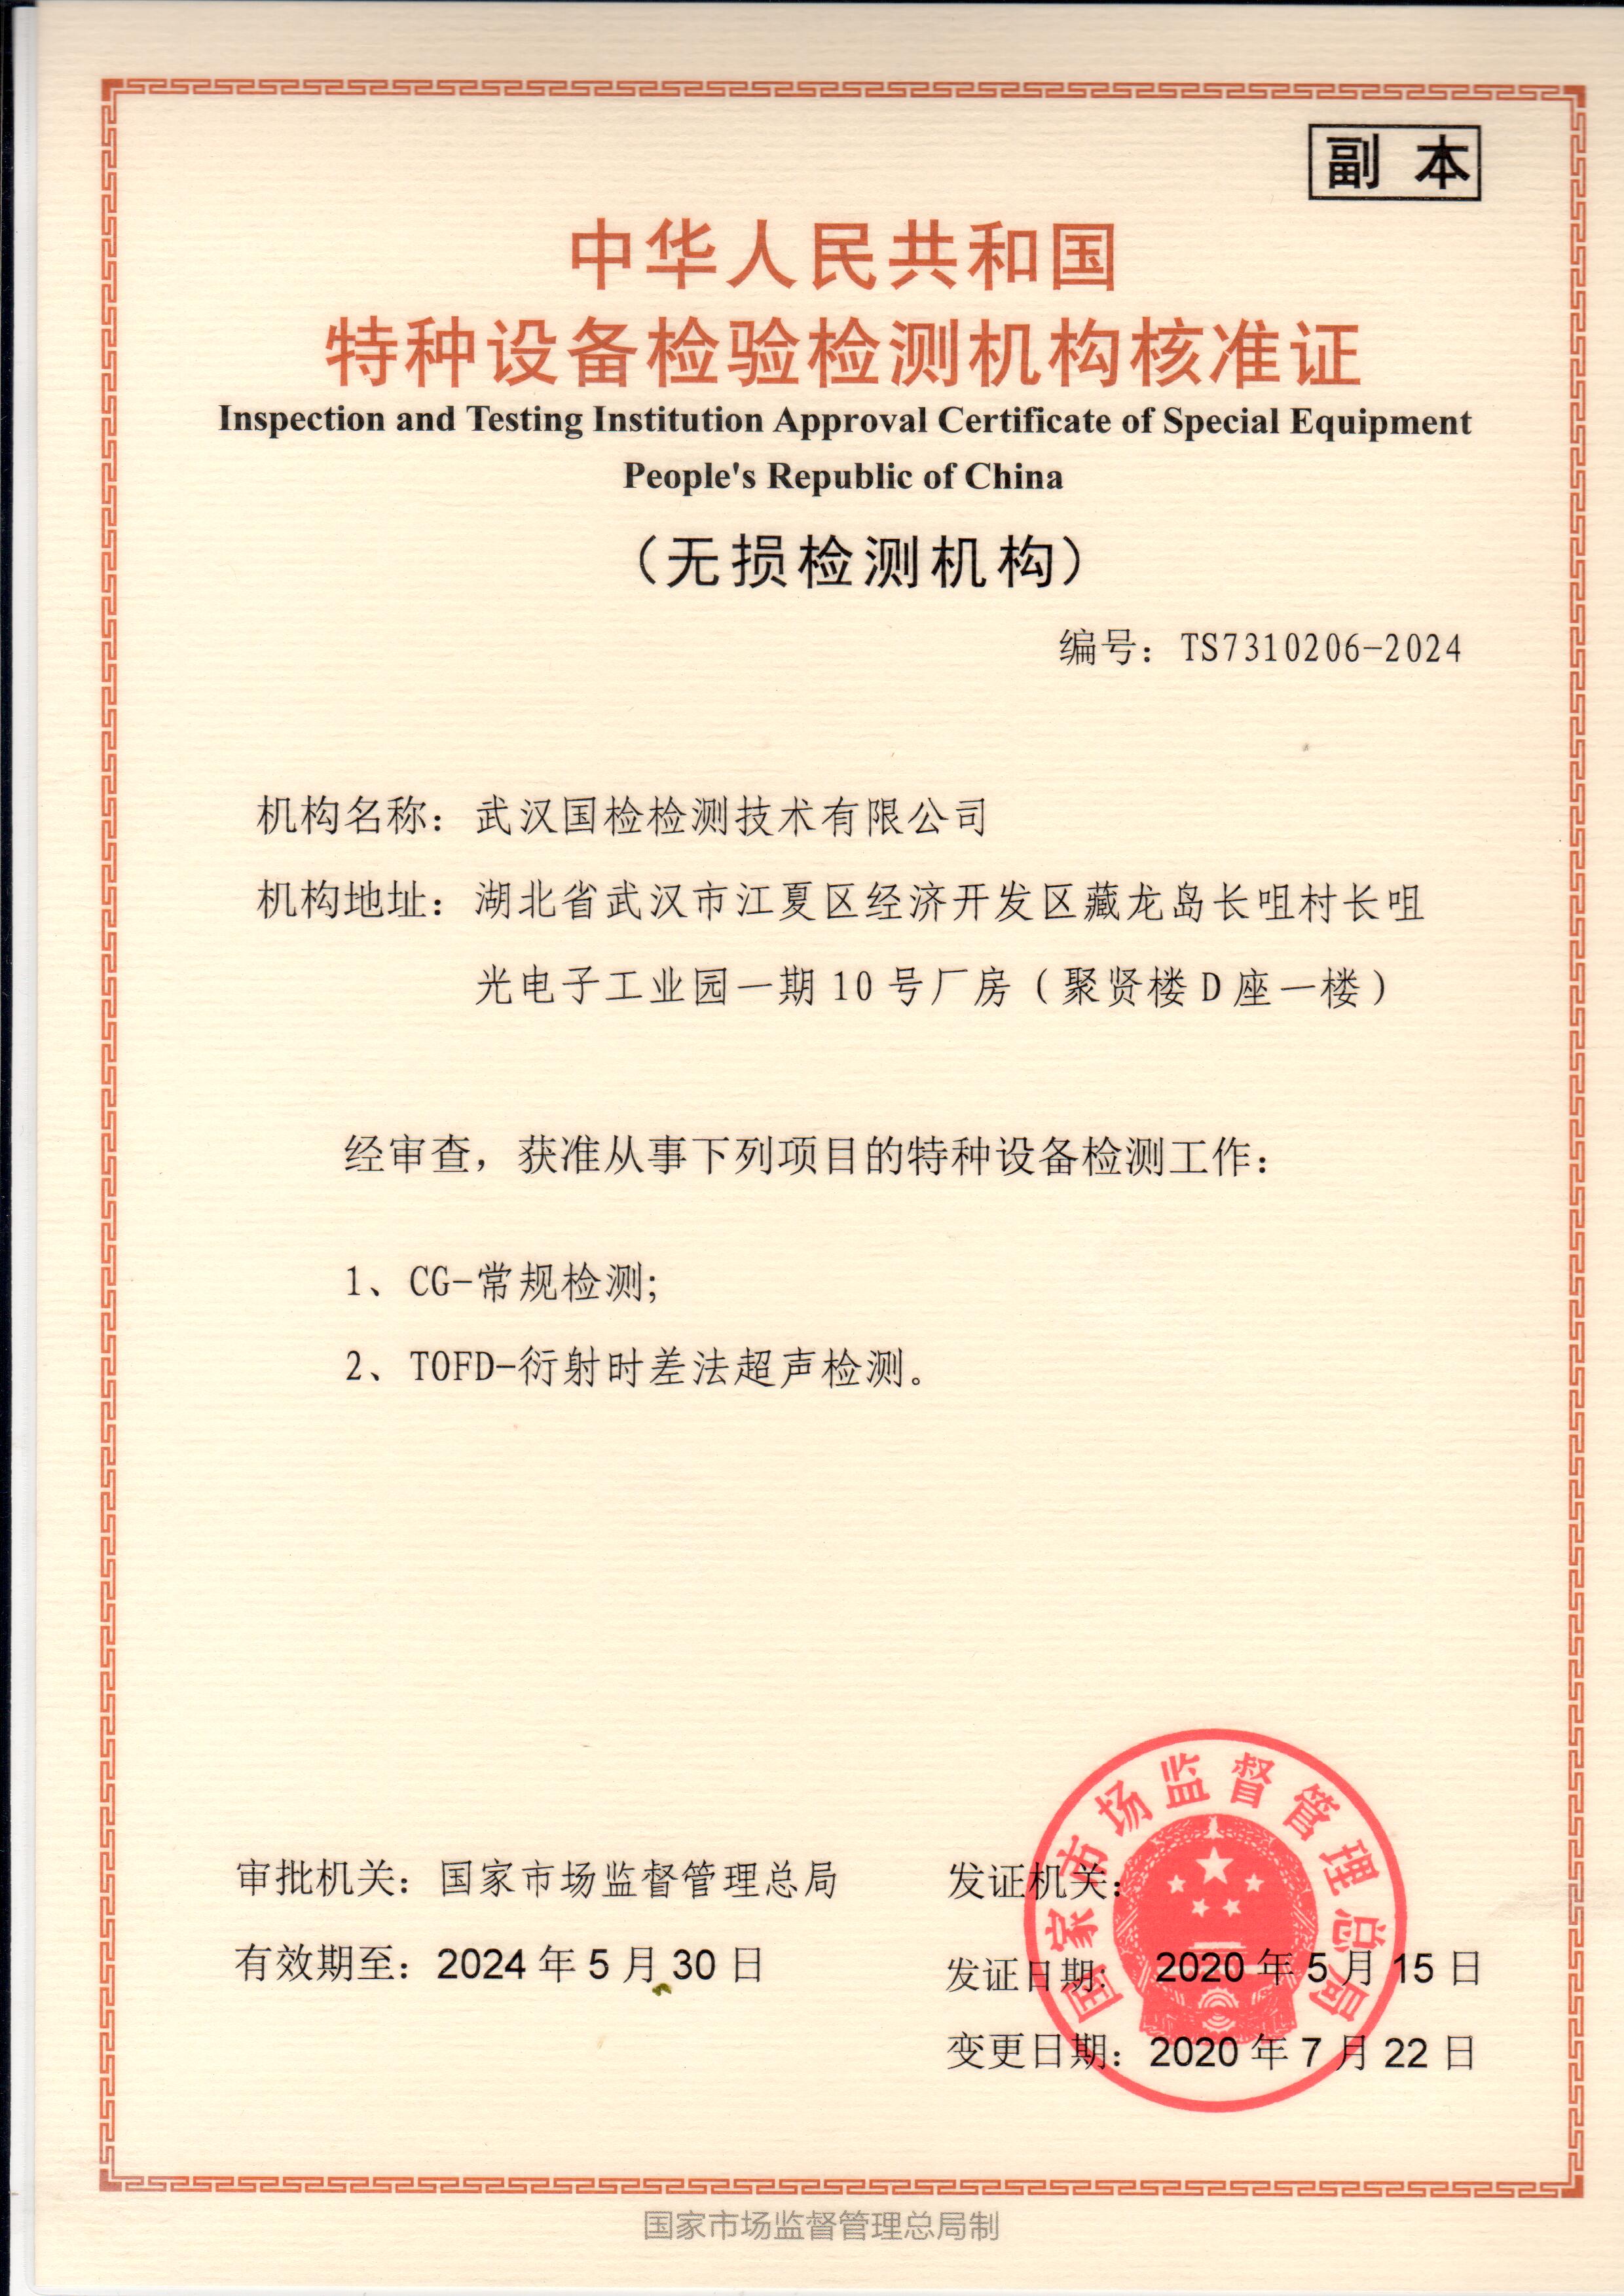 武漢國檢特種設備檢驗檢測機構核準證